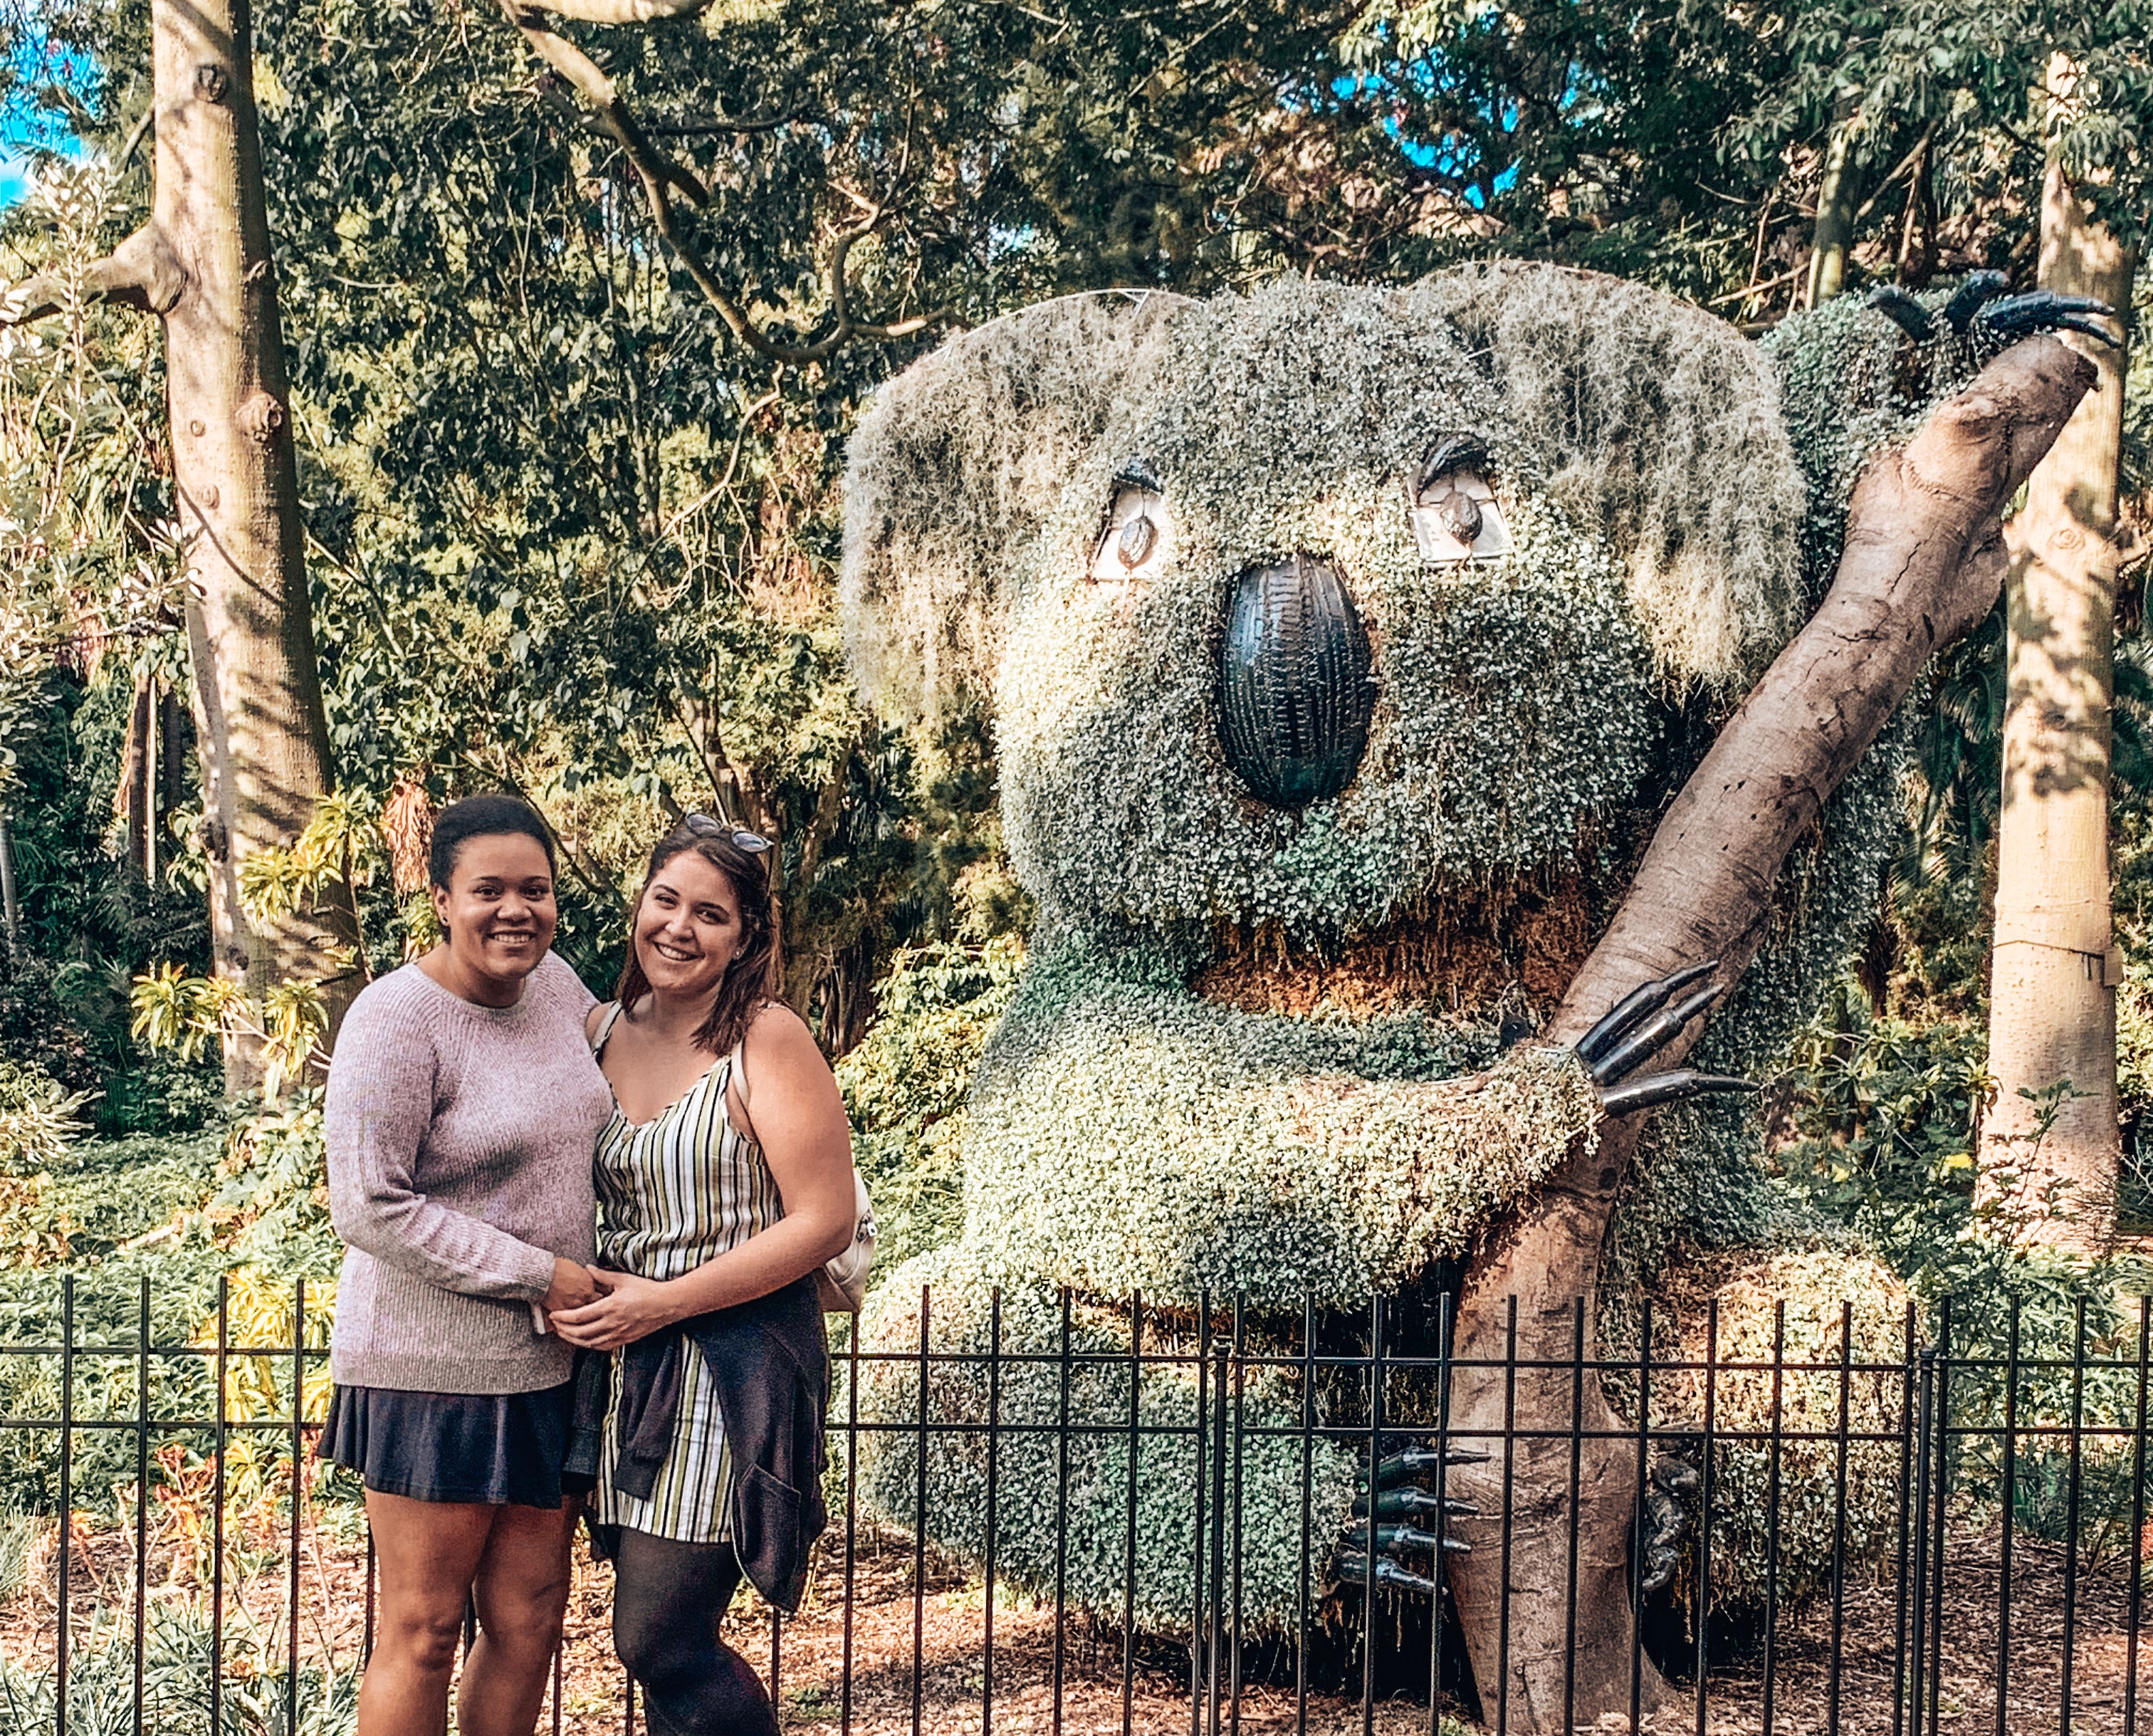 Two girls posing next to a garden bush shaped into a smiling koala